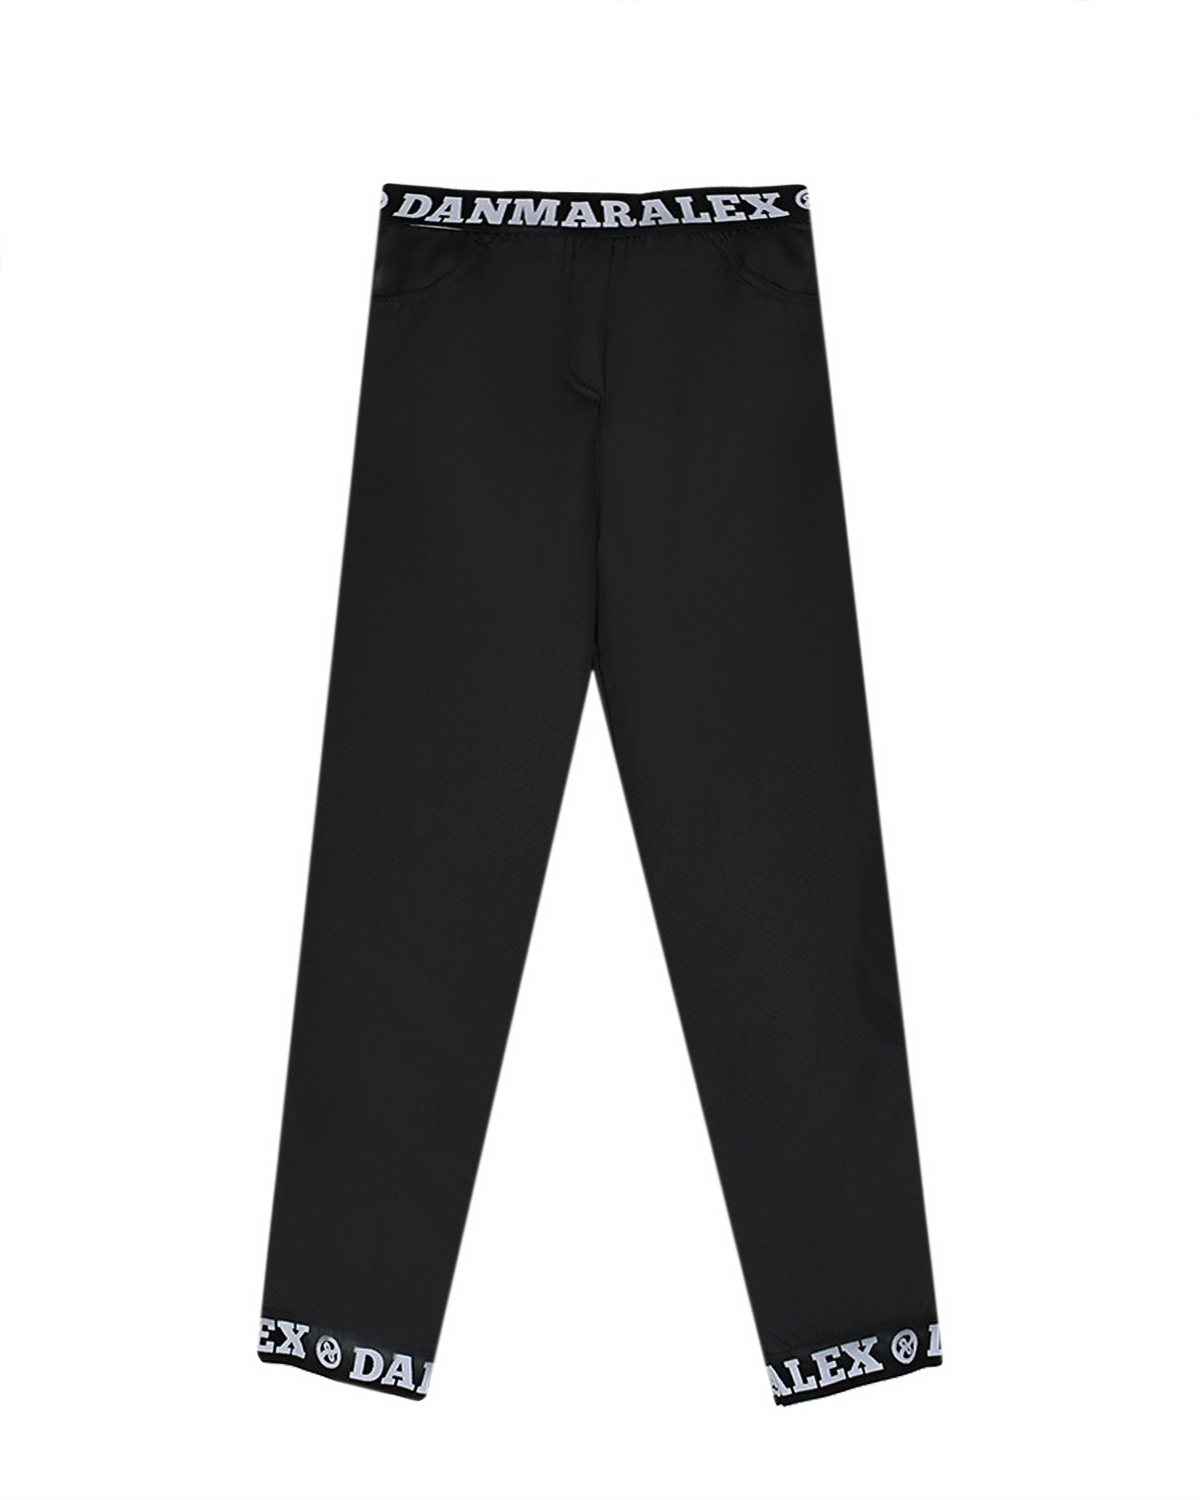 Черные болоневые брюки Dan Maralex детские, размер 116, цвет черный